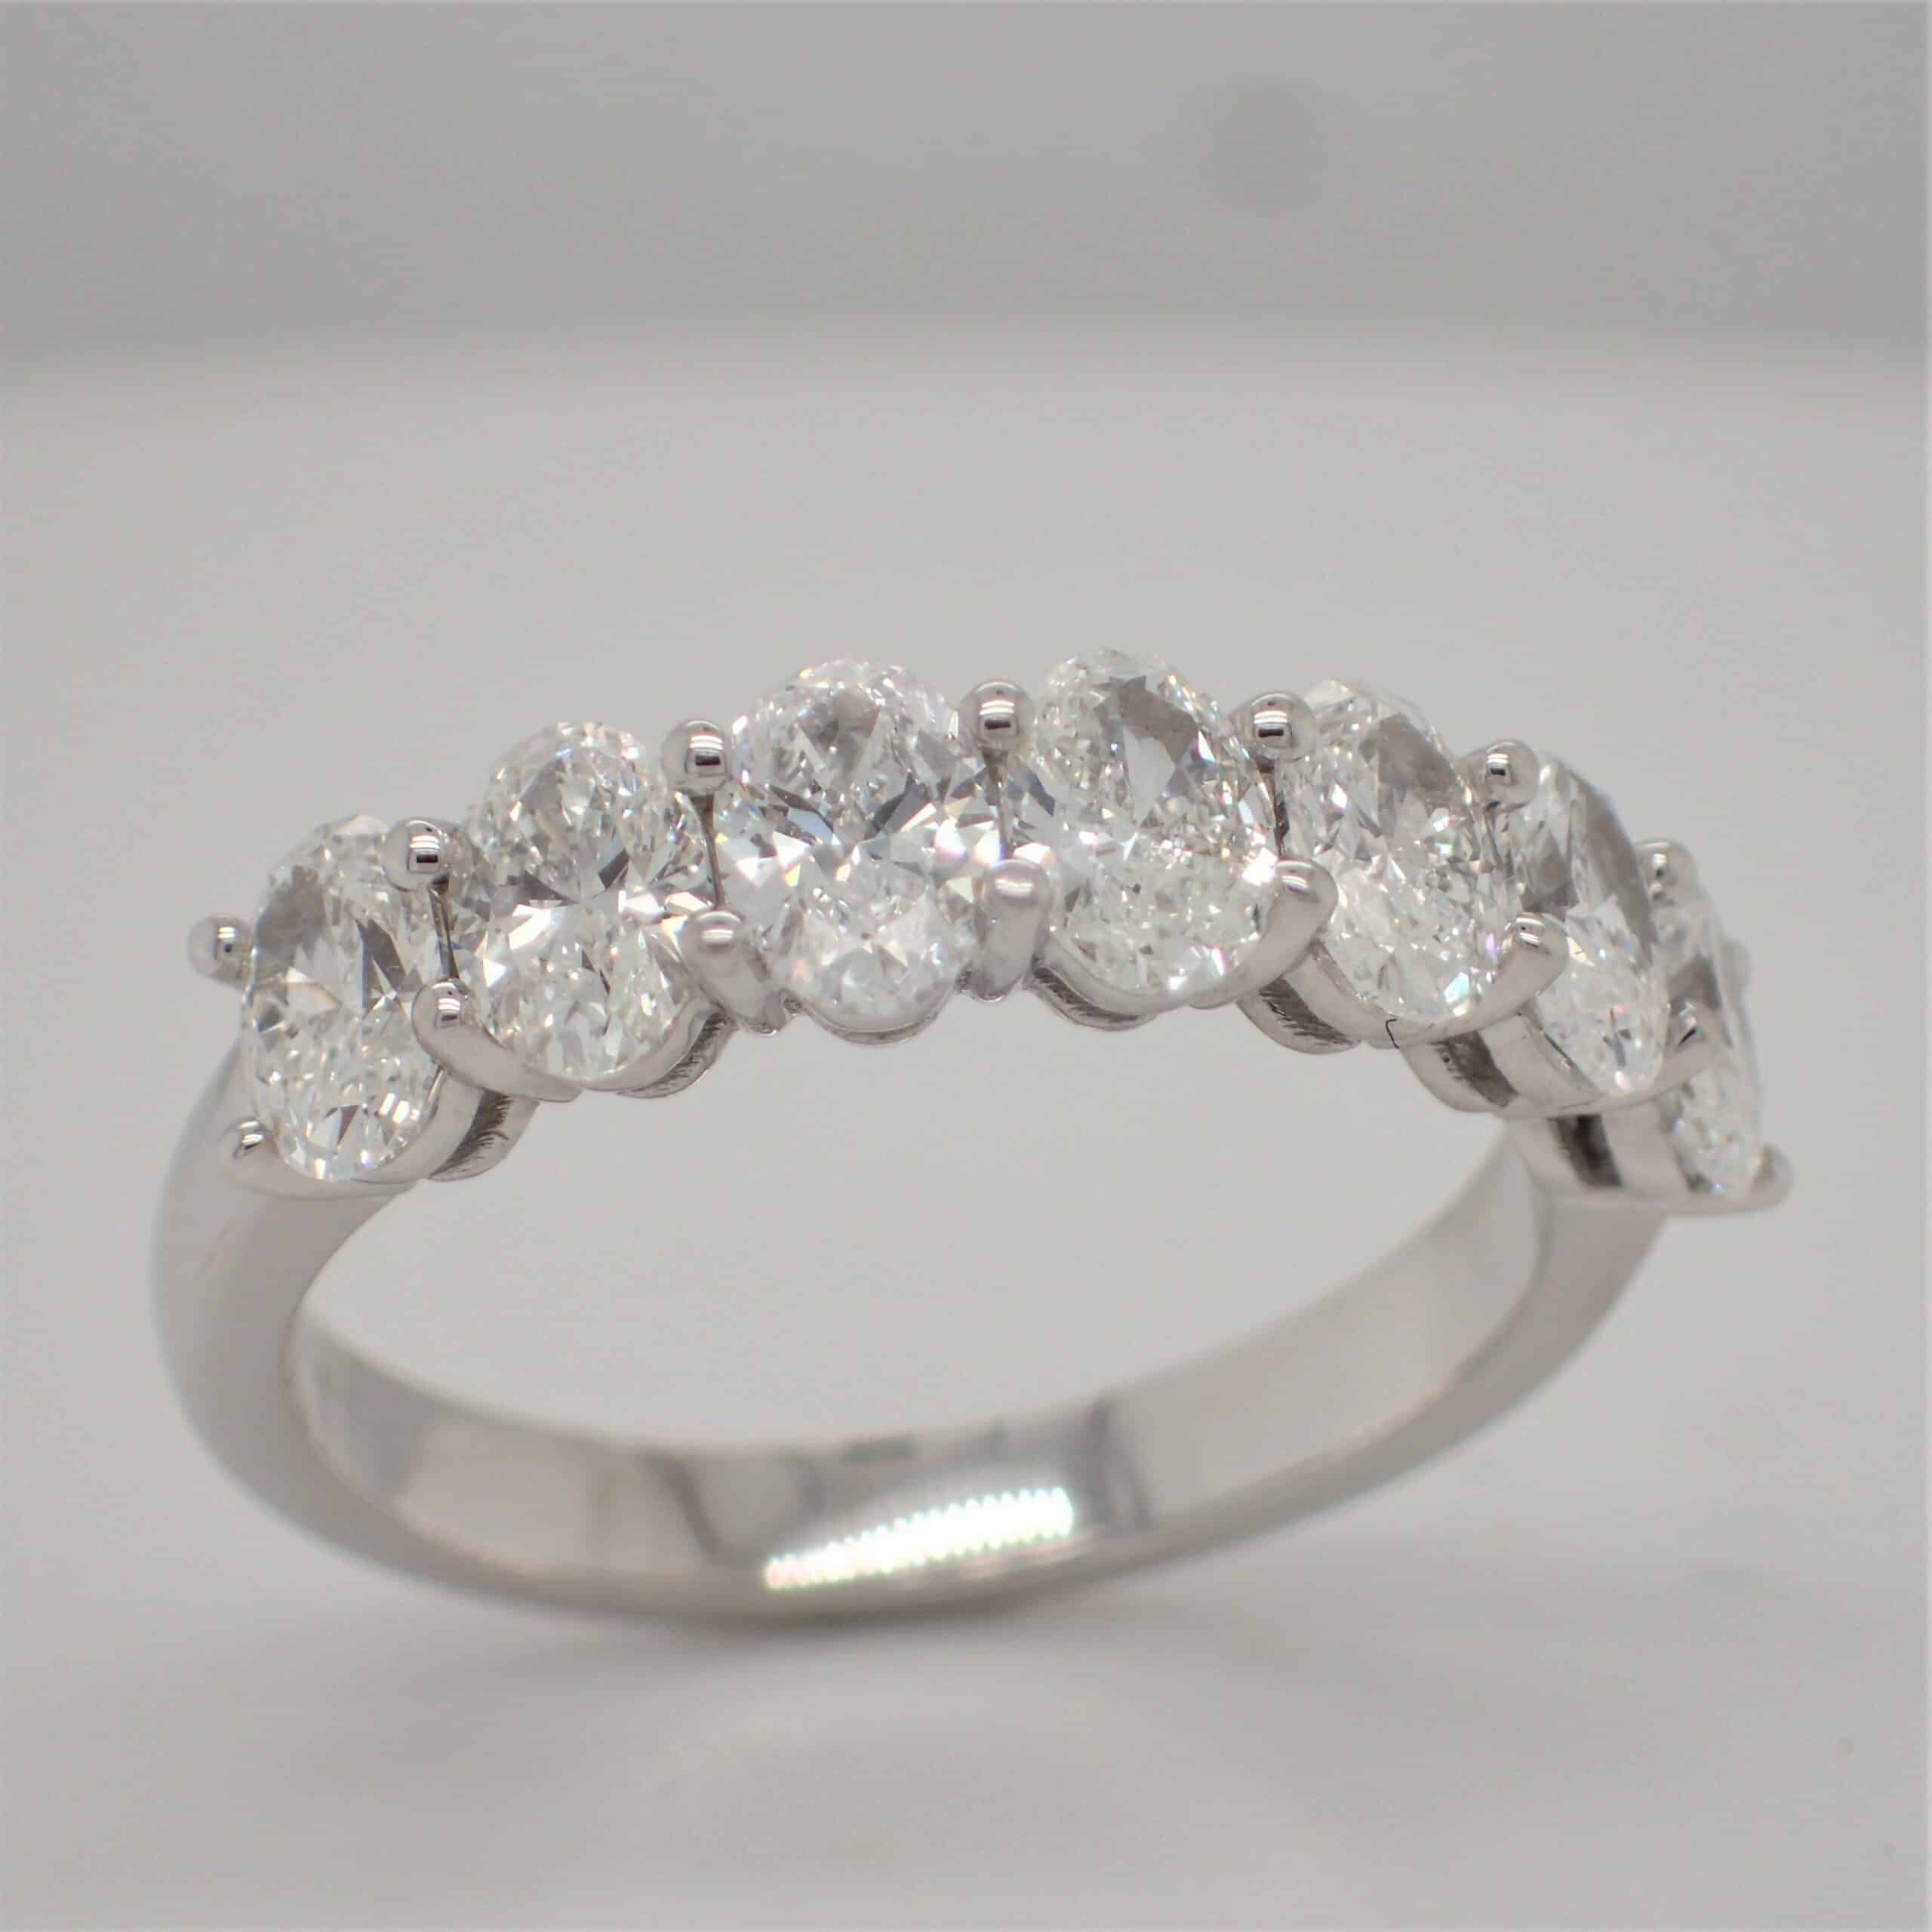 Oval diamond ring